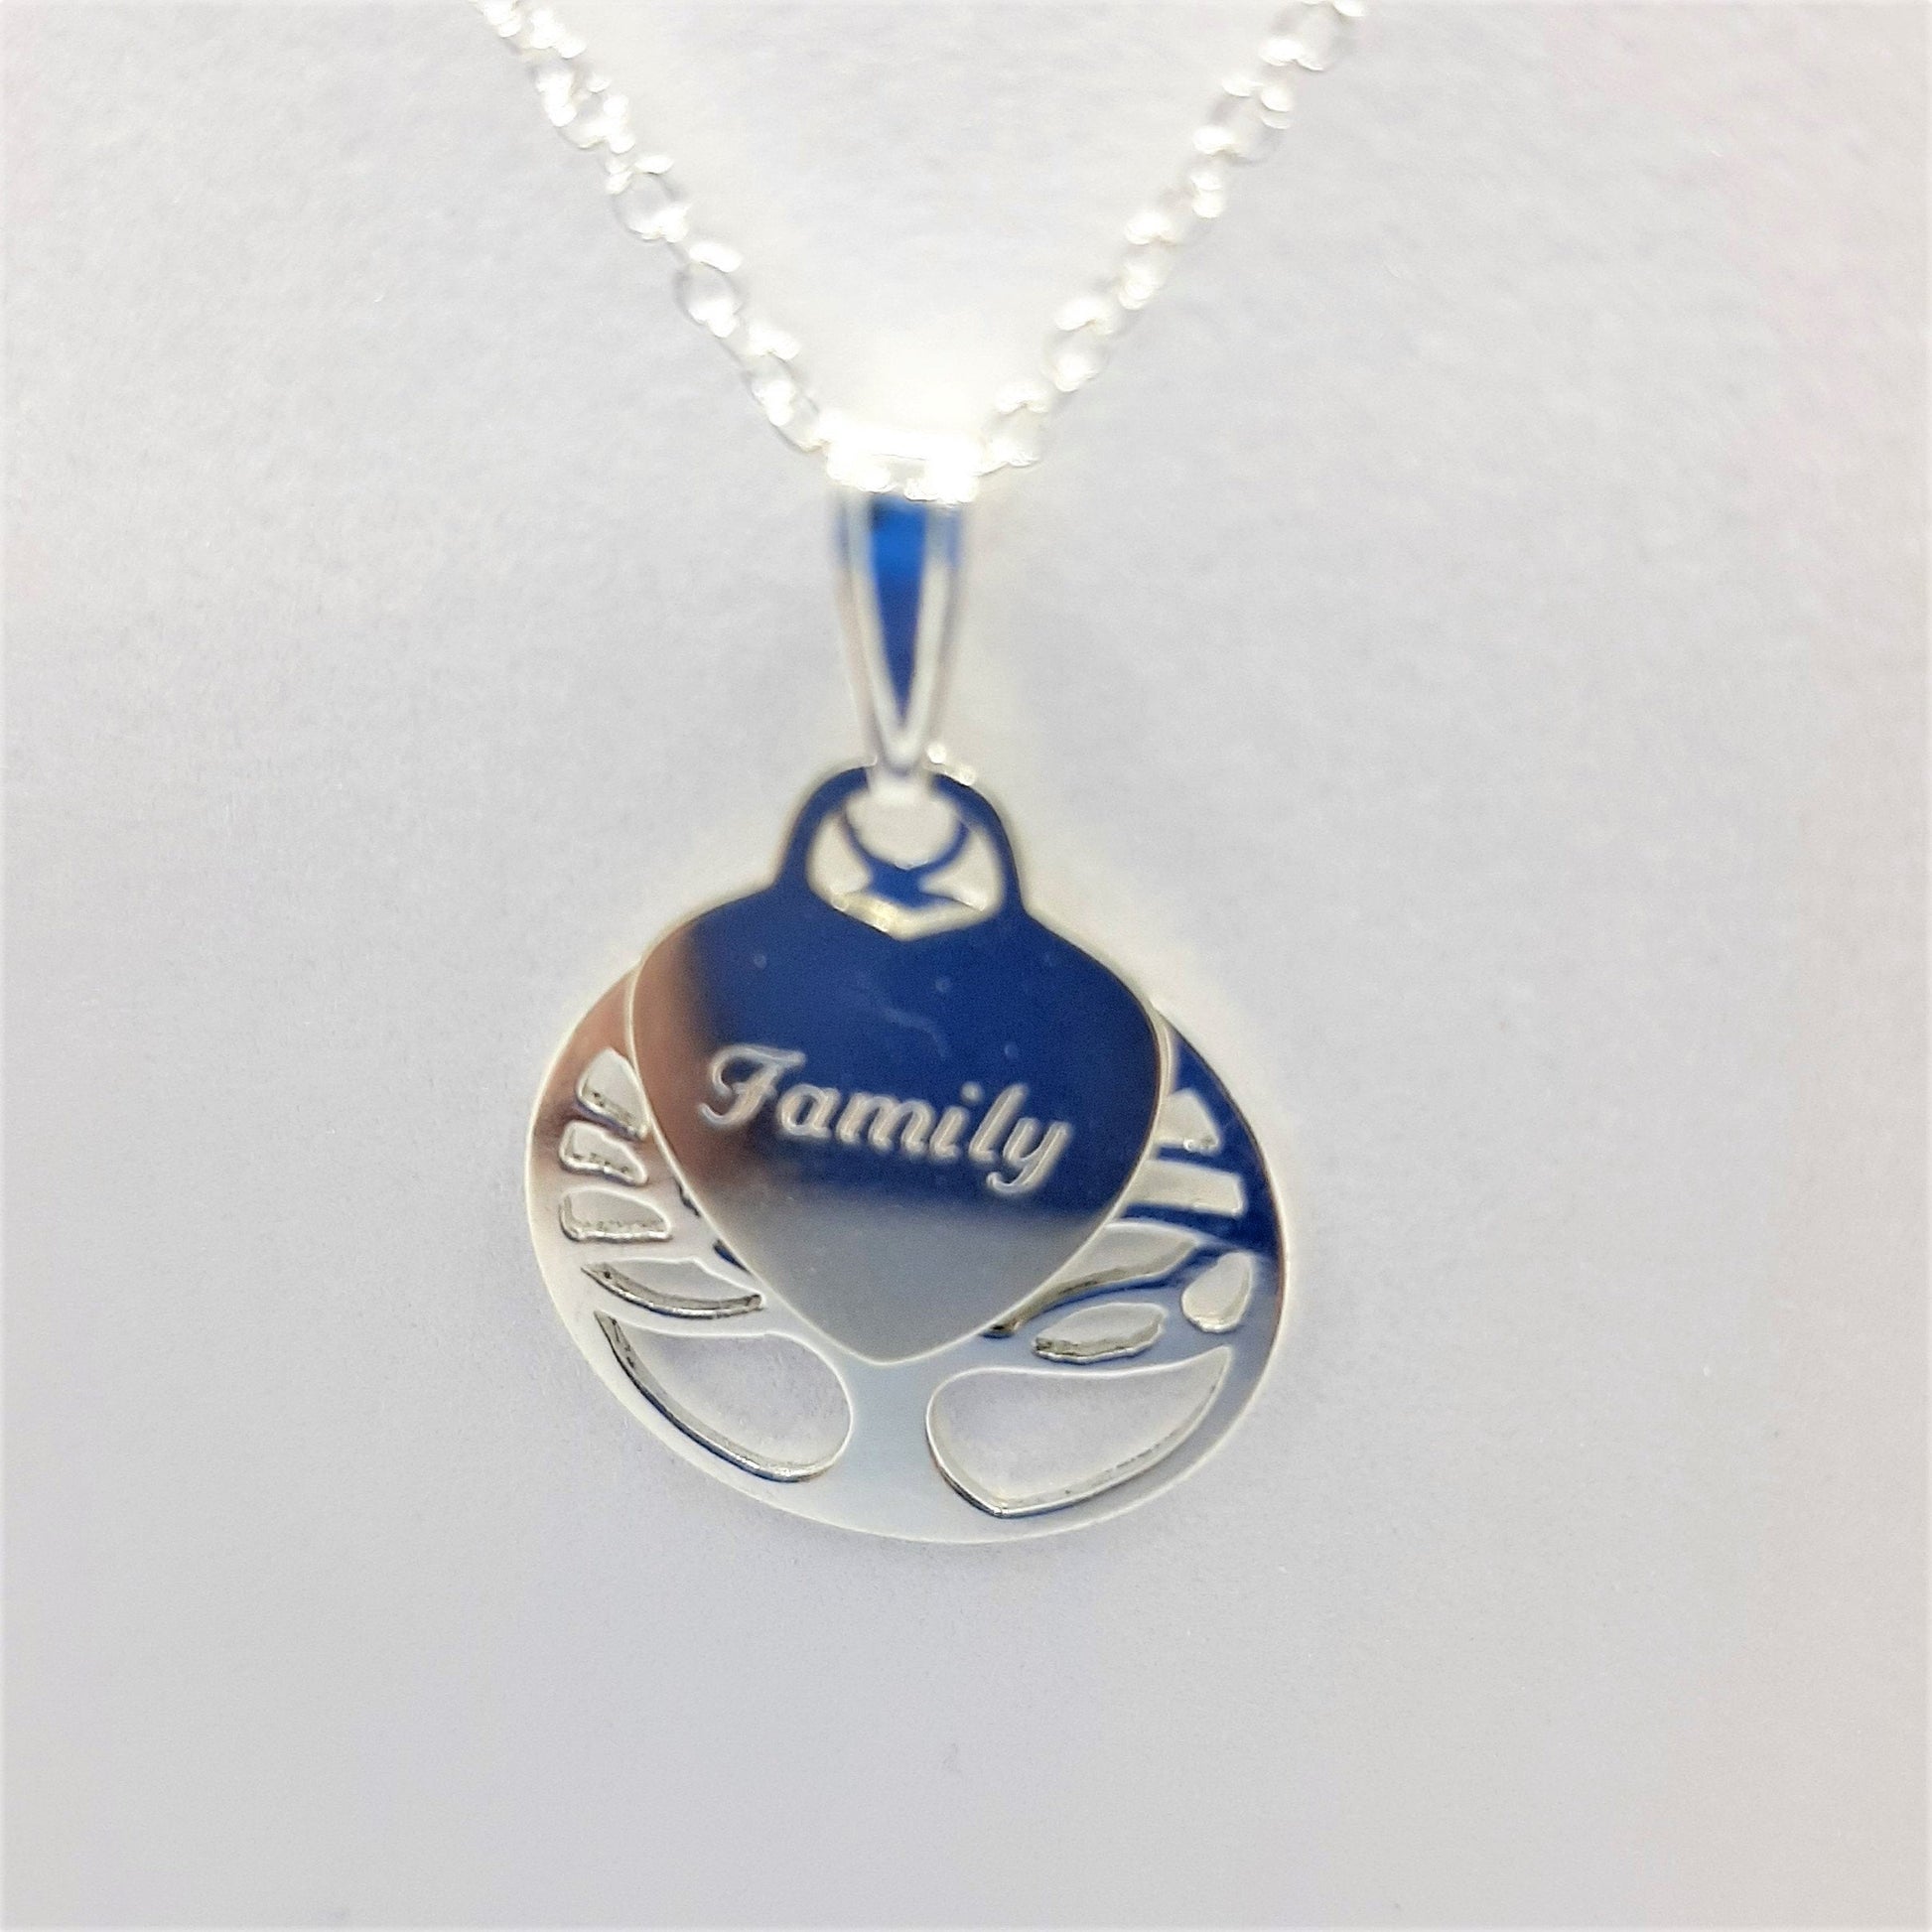 Family Tree pendant with Family heart